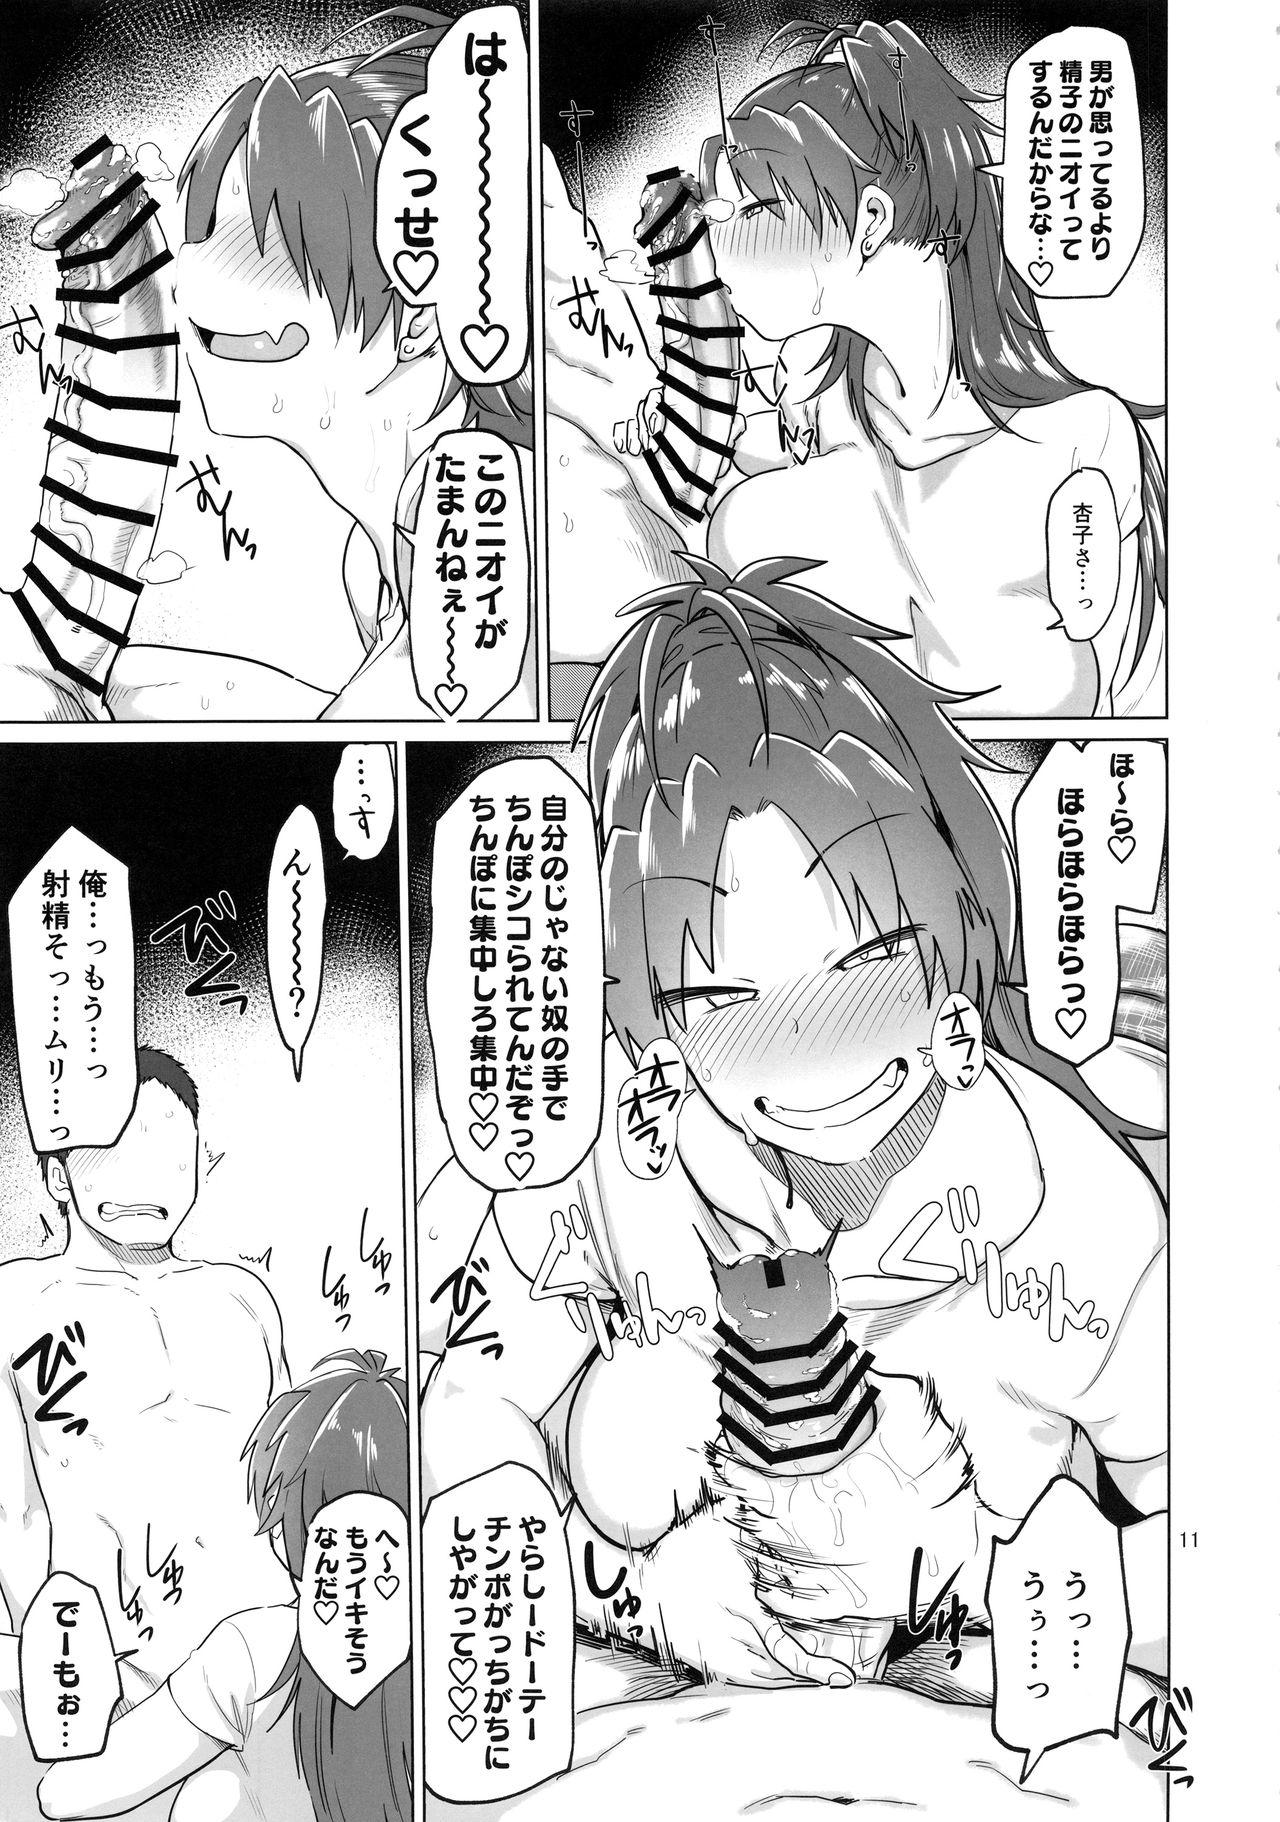 Buttfucking Otonari no... Moto Sakura-san - Puella magi madoka magica Made - Page 11